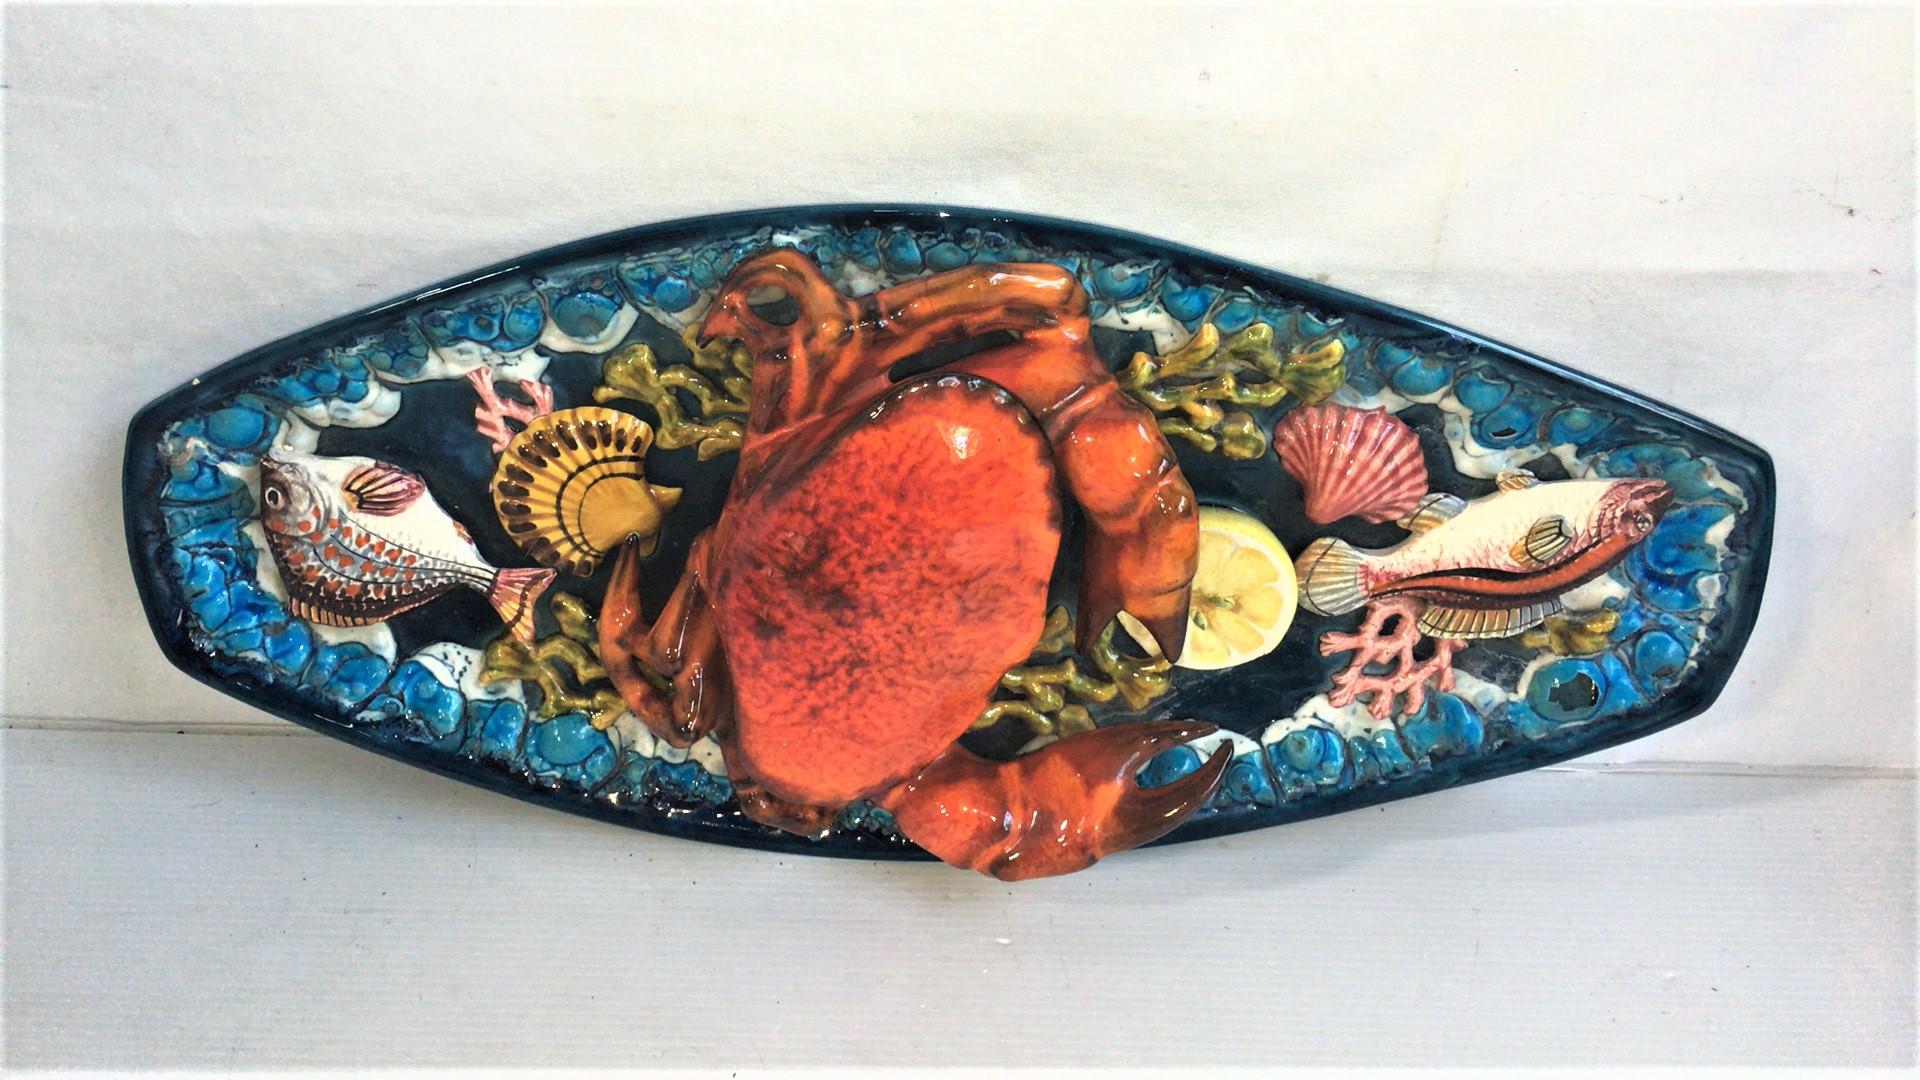 Grand plat mural ovale en faïence de Palissy avec crabe et poisson Vallauris, vers 1950
Grand crabe en relief, poissons, coquillages et algues.
   